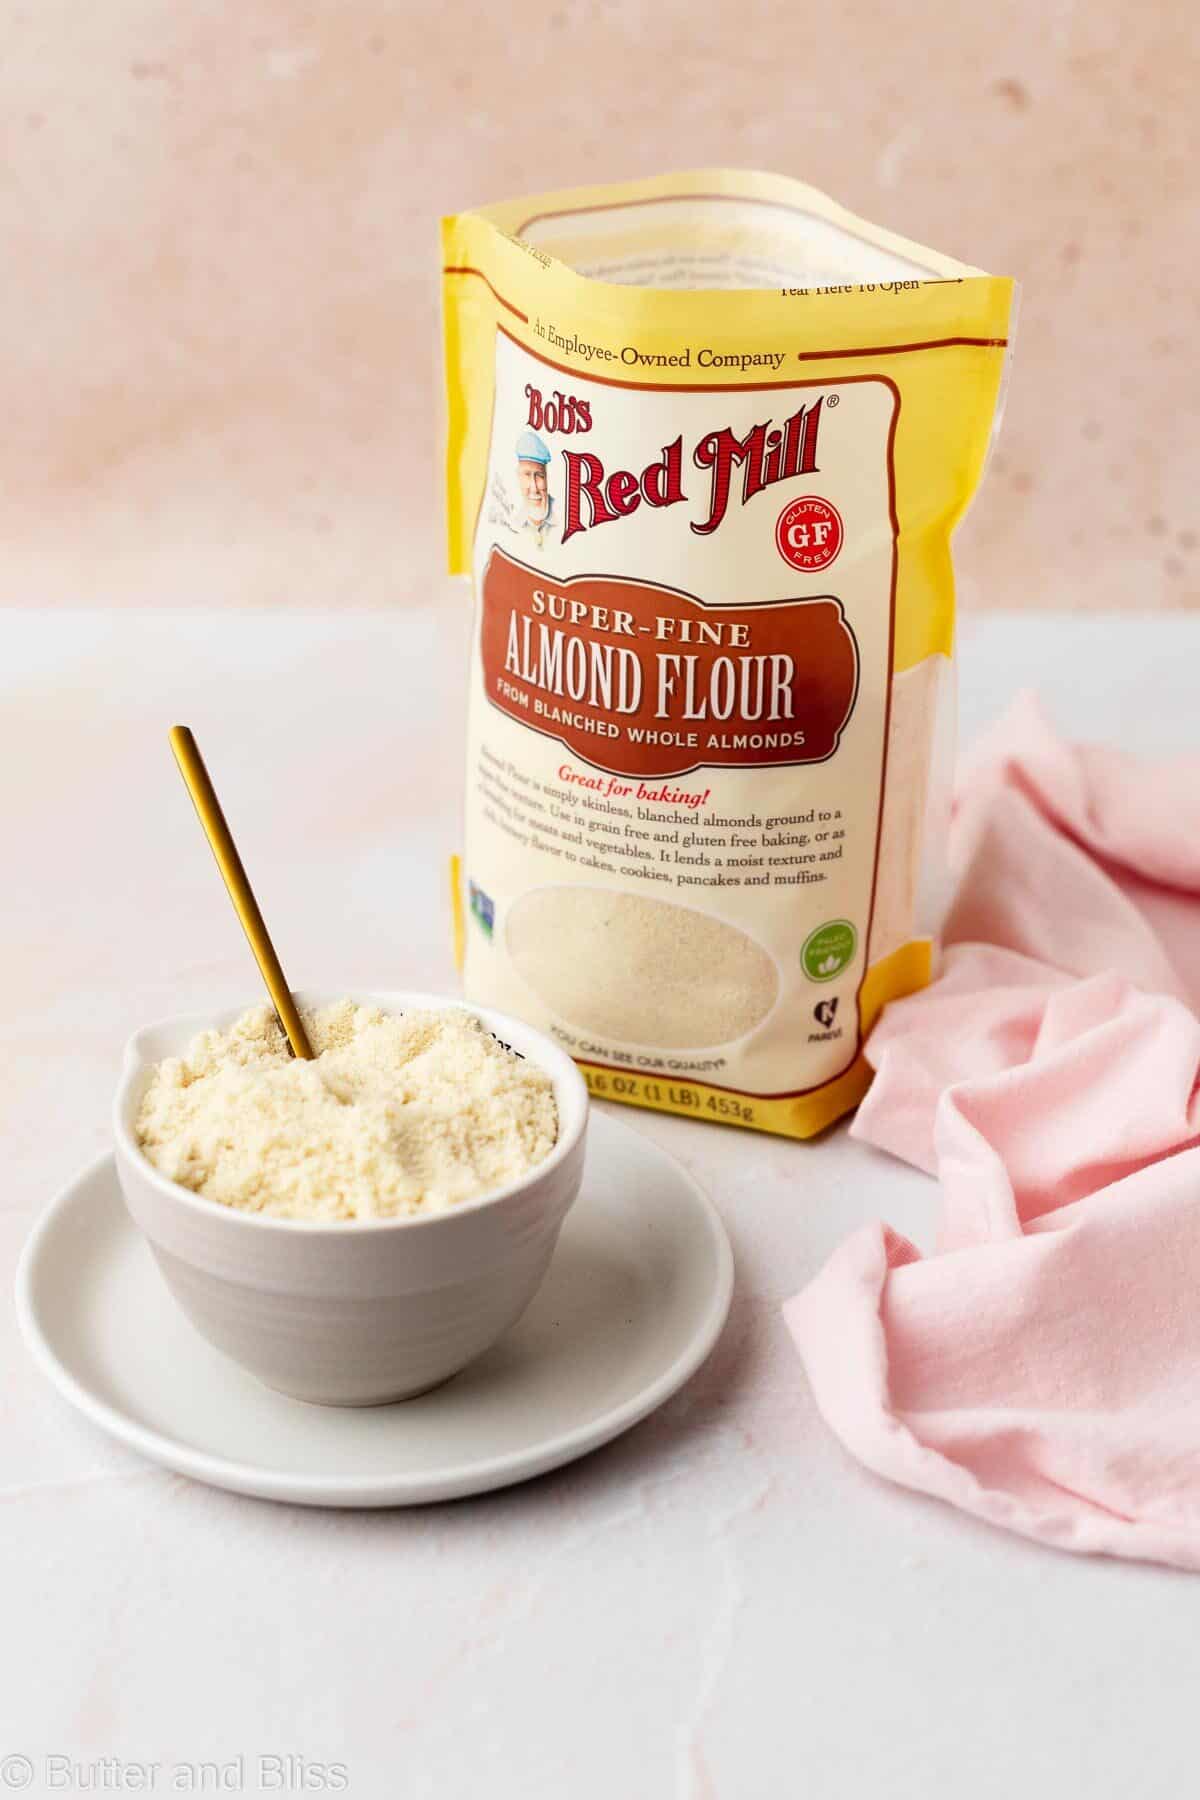 A bowl of almond flour next to a bag of almond flour.